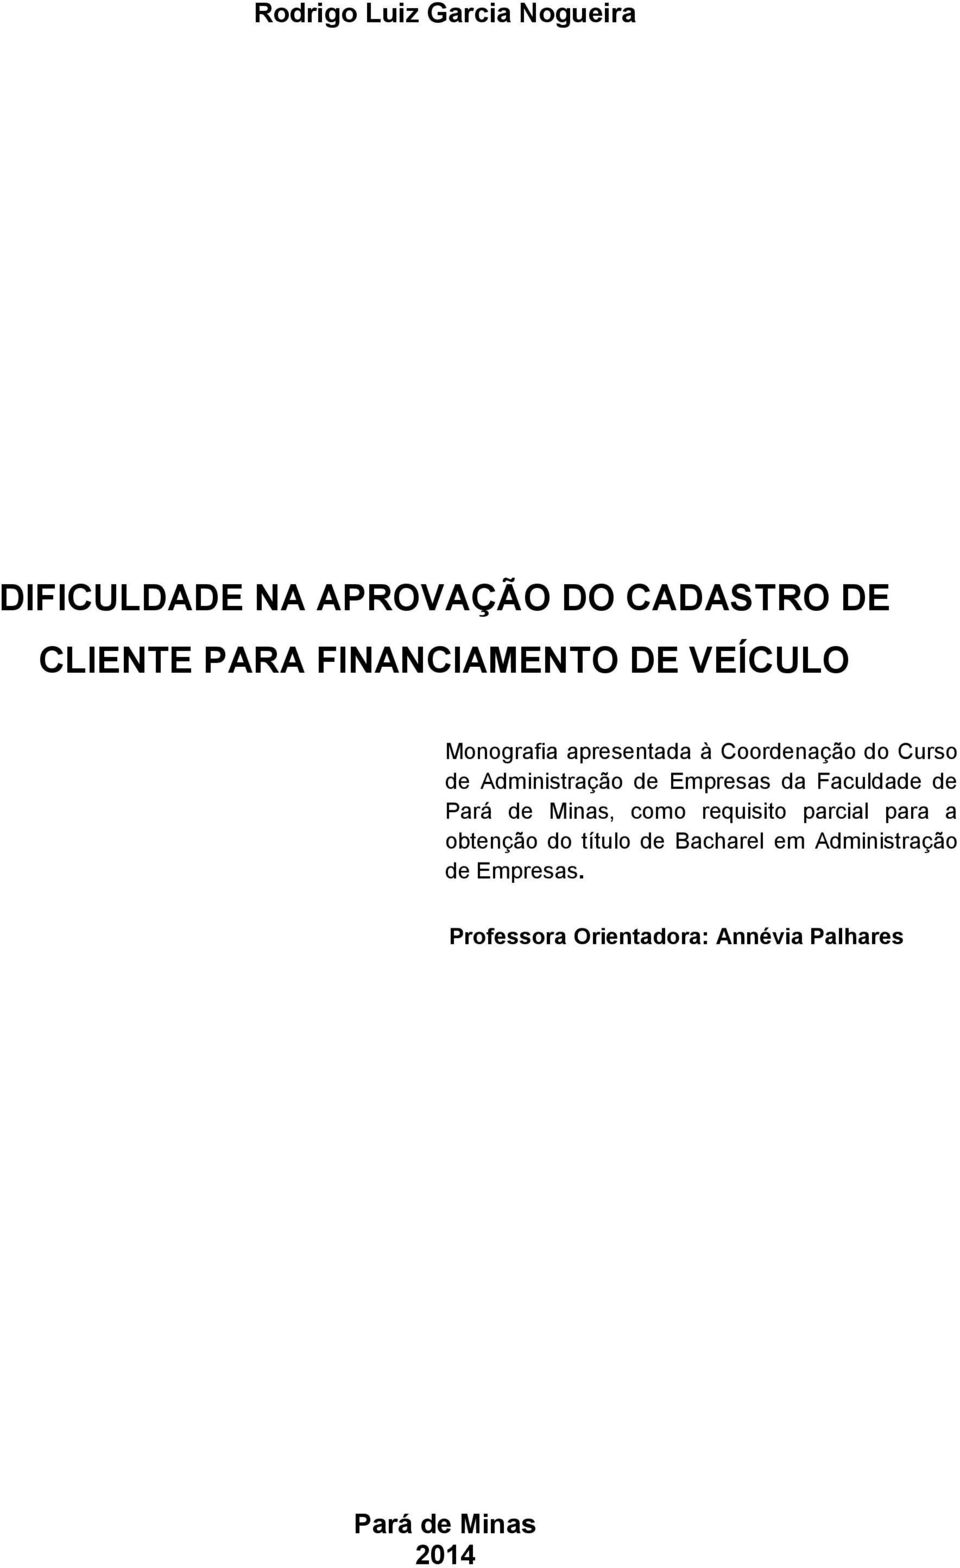 Empresas da Faculdade de Pará de Minas, como requisito parcial para a obtenção do título